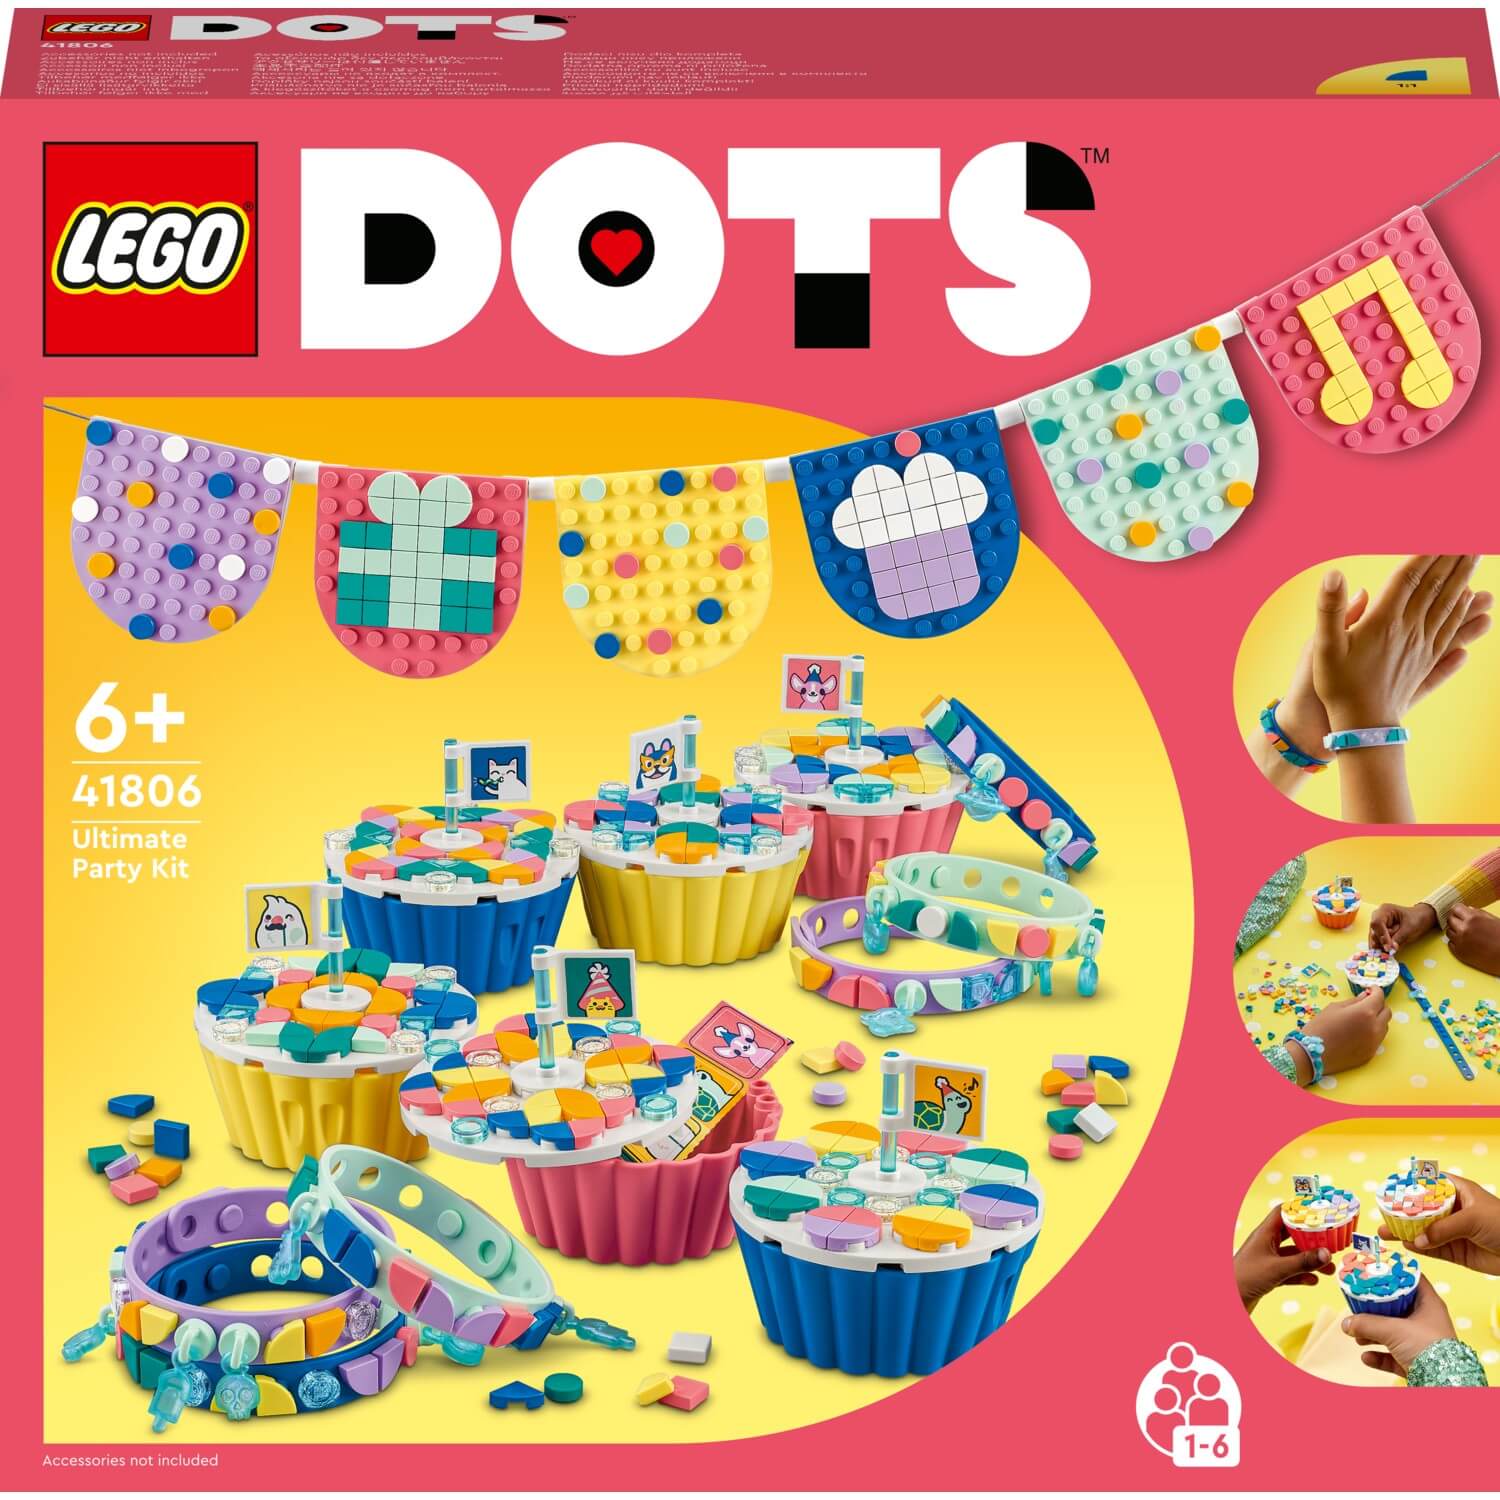 Конструктор LEGO DOTS Идеальный комплект для вечеринки 41806, 1154 pieces конструктор 41935 большой набор тайлов lego dots 6 1040 деталей